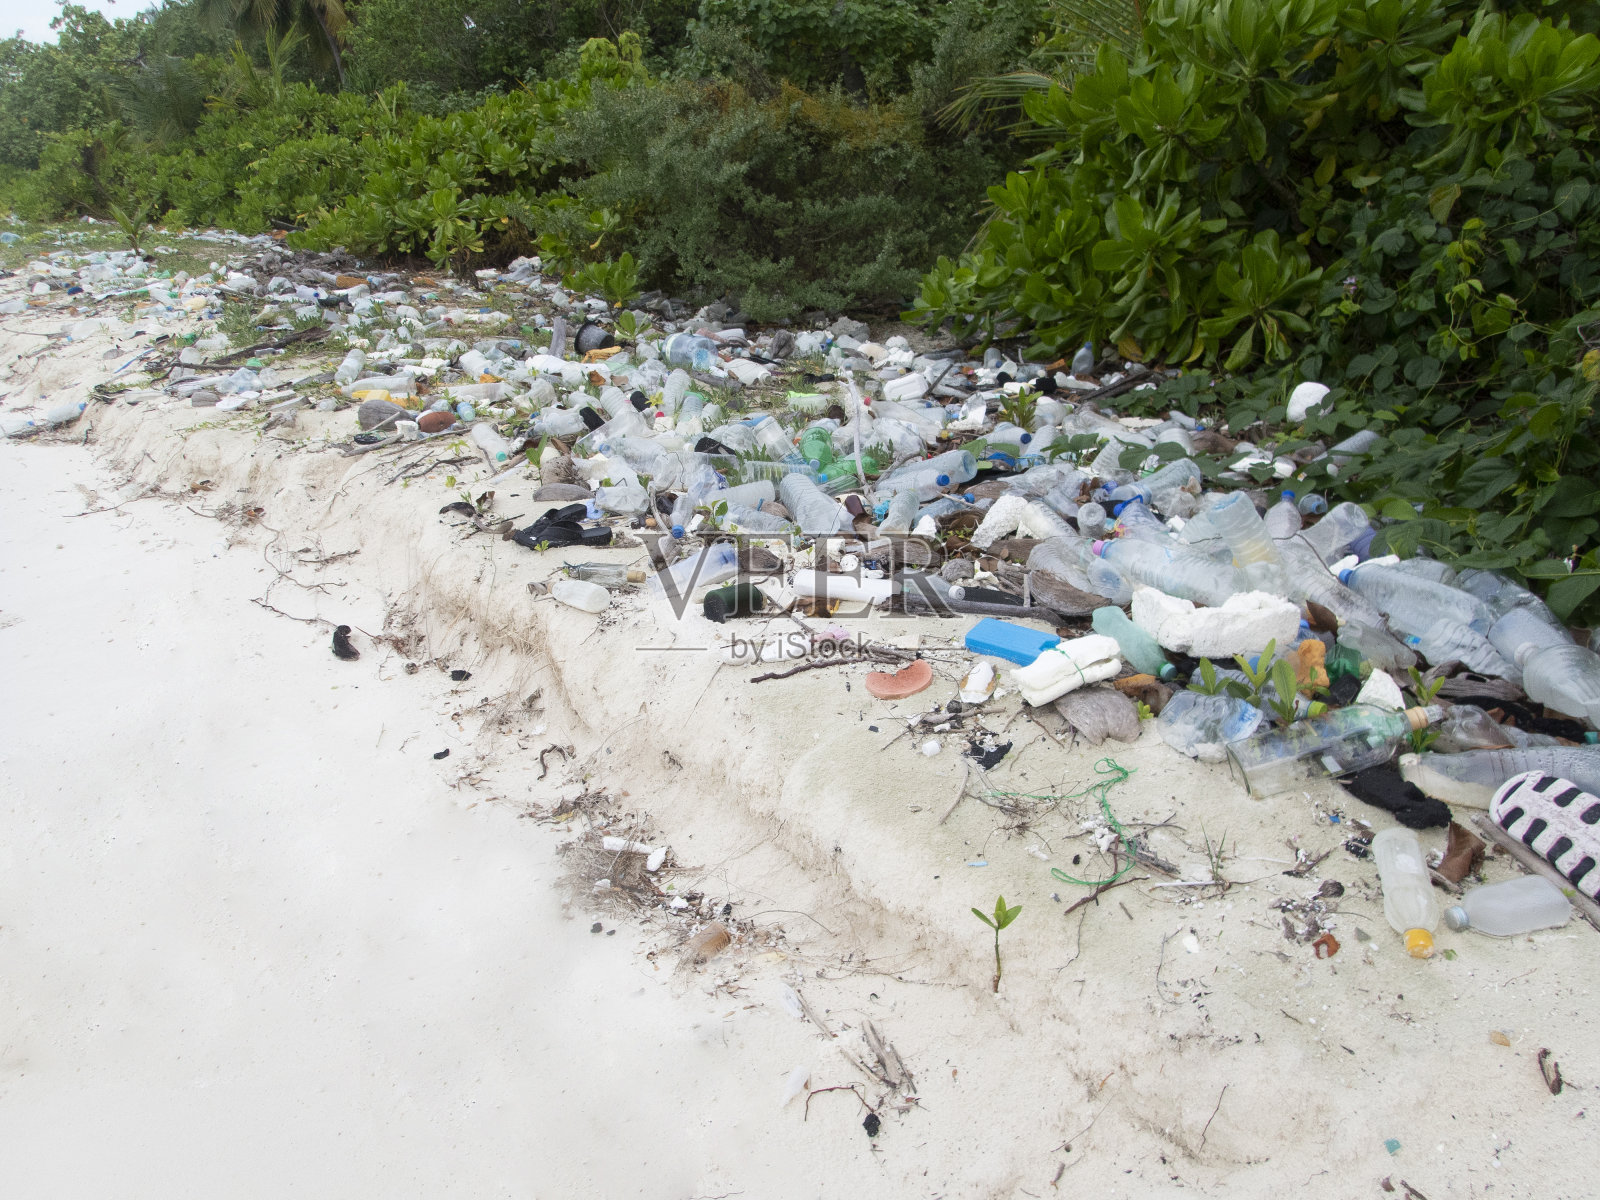 海滩污染拯救地球库存照片照片摄影图片